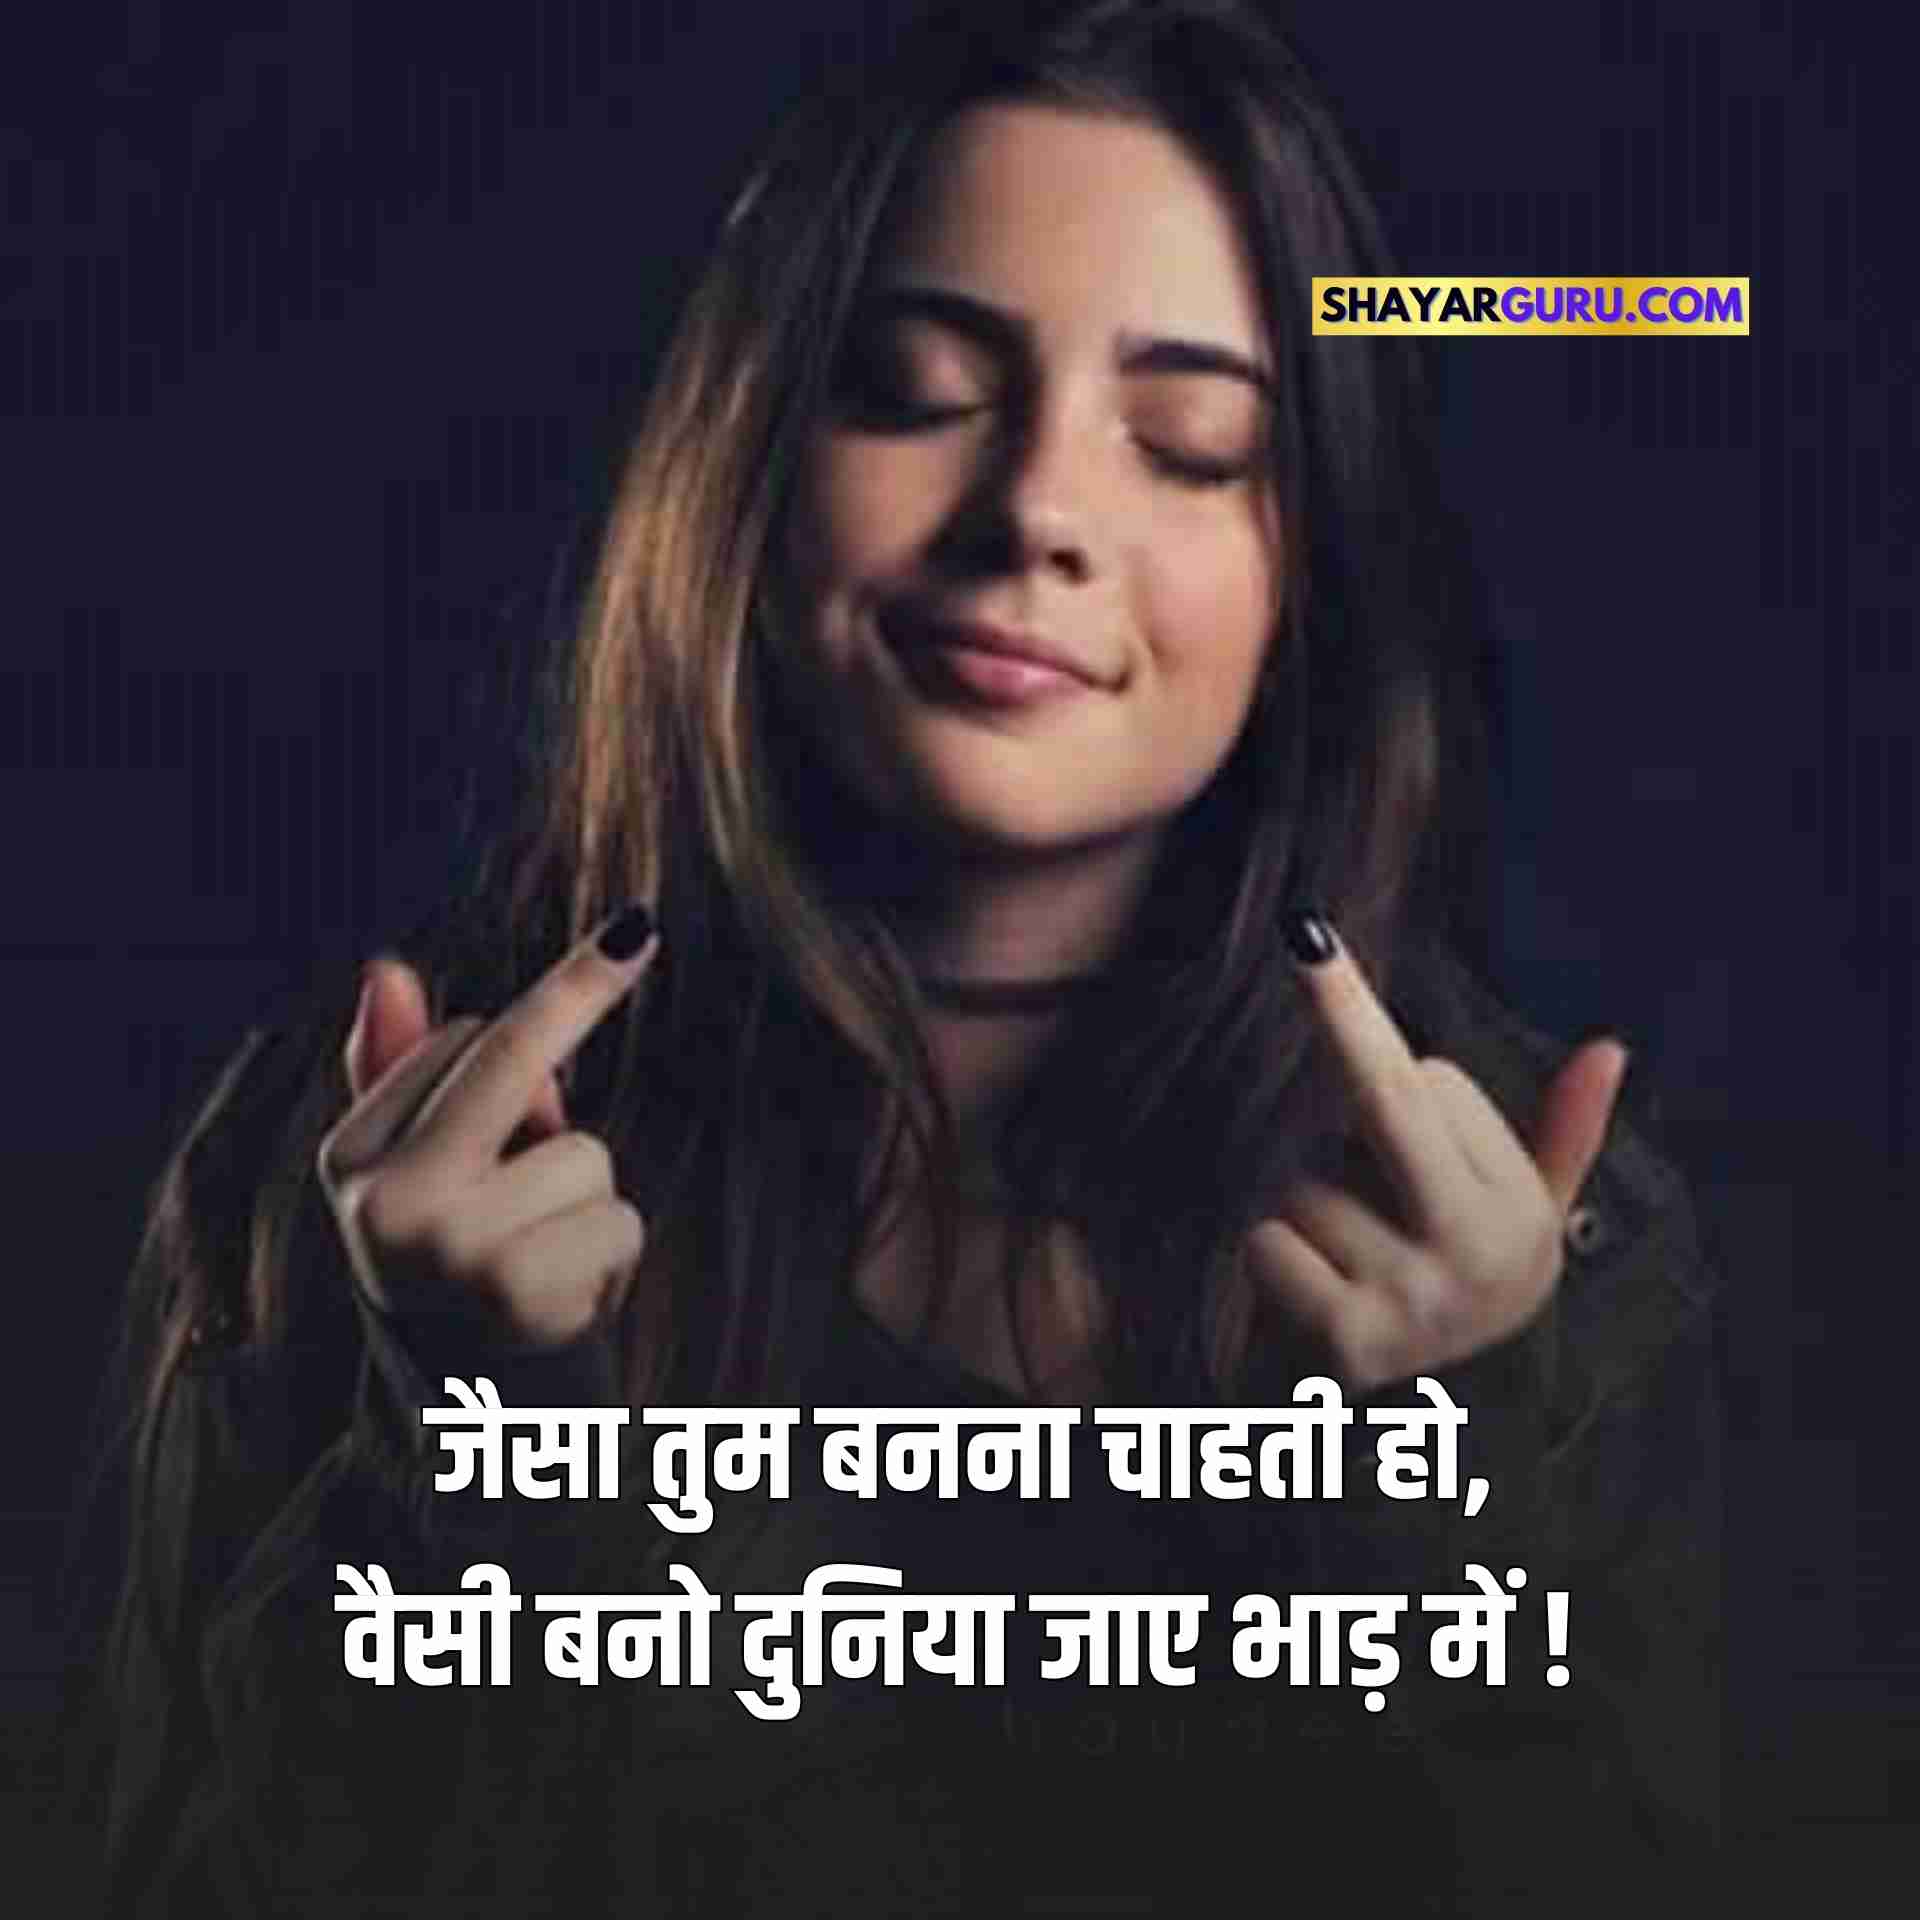 Girl Attitude Status in Hindi HD Image